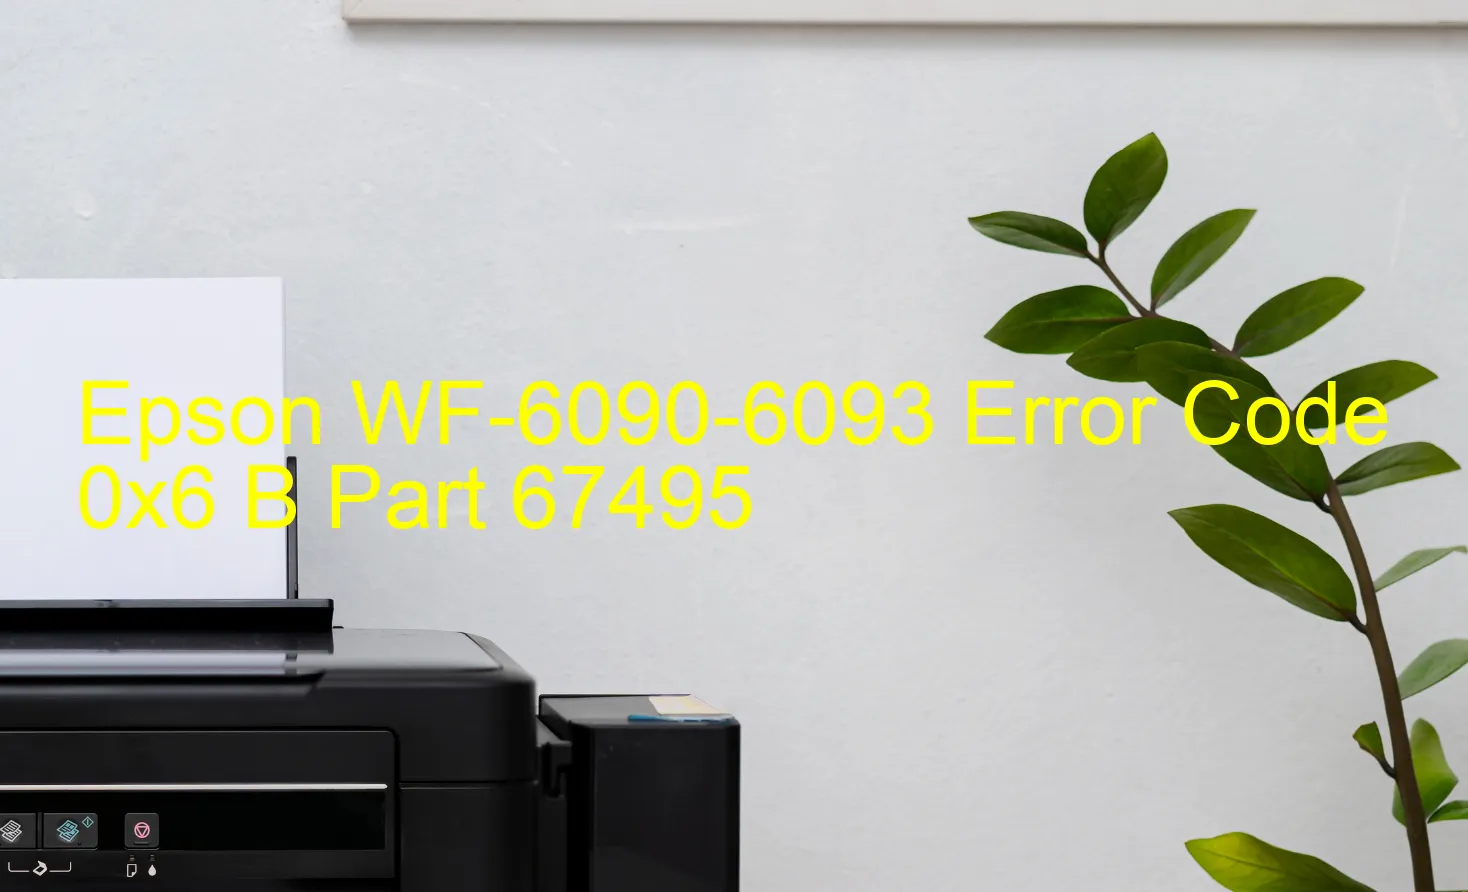 Epson WF-6090-6093 Codice di errore 0x6 B